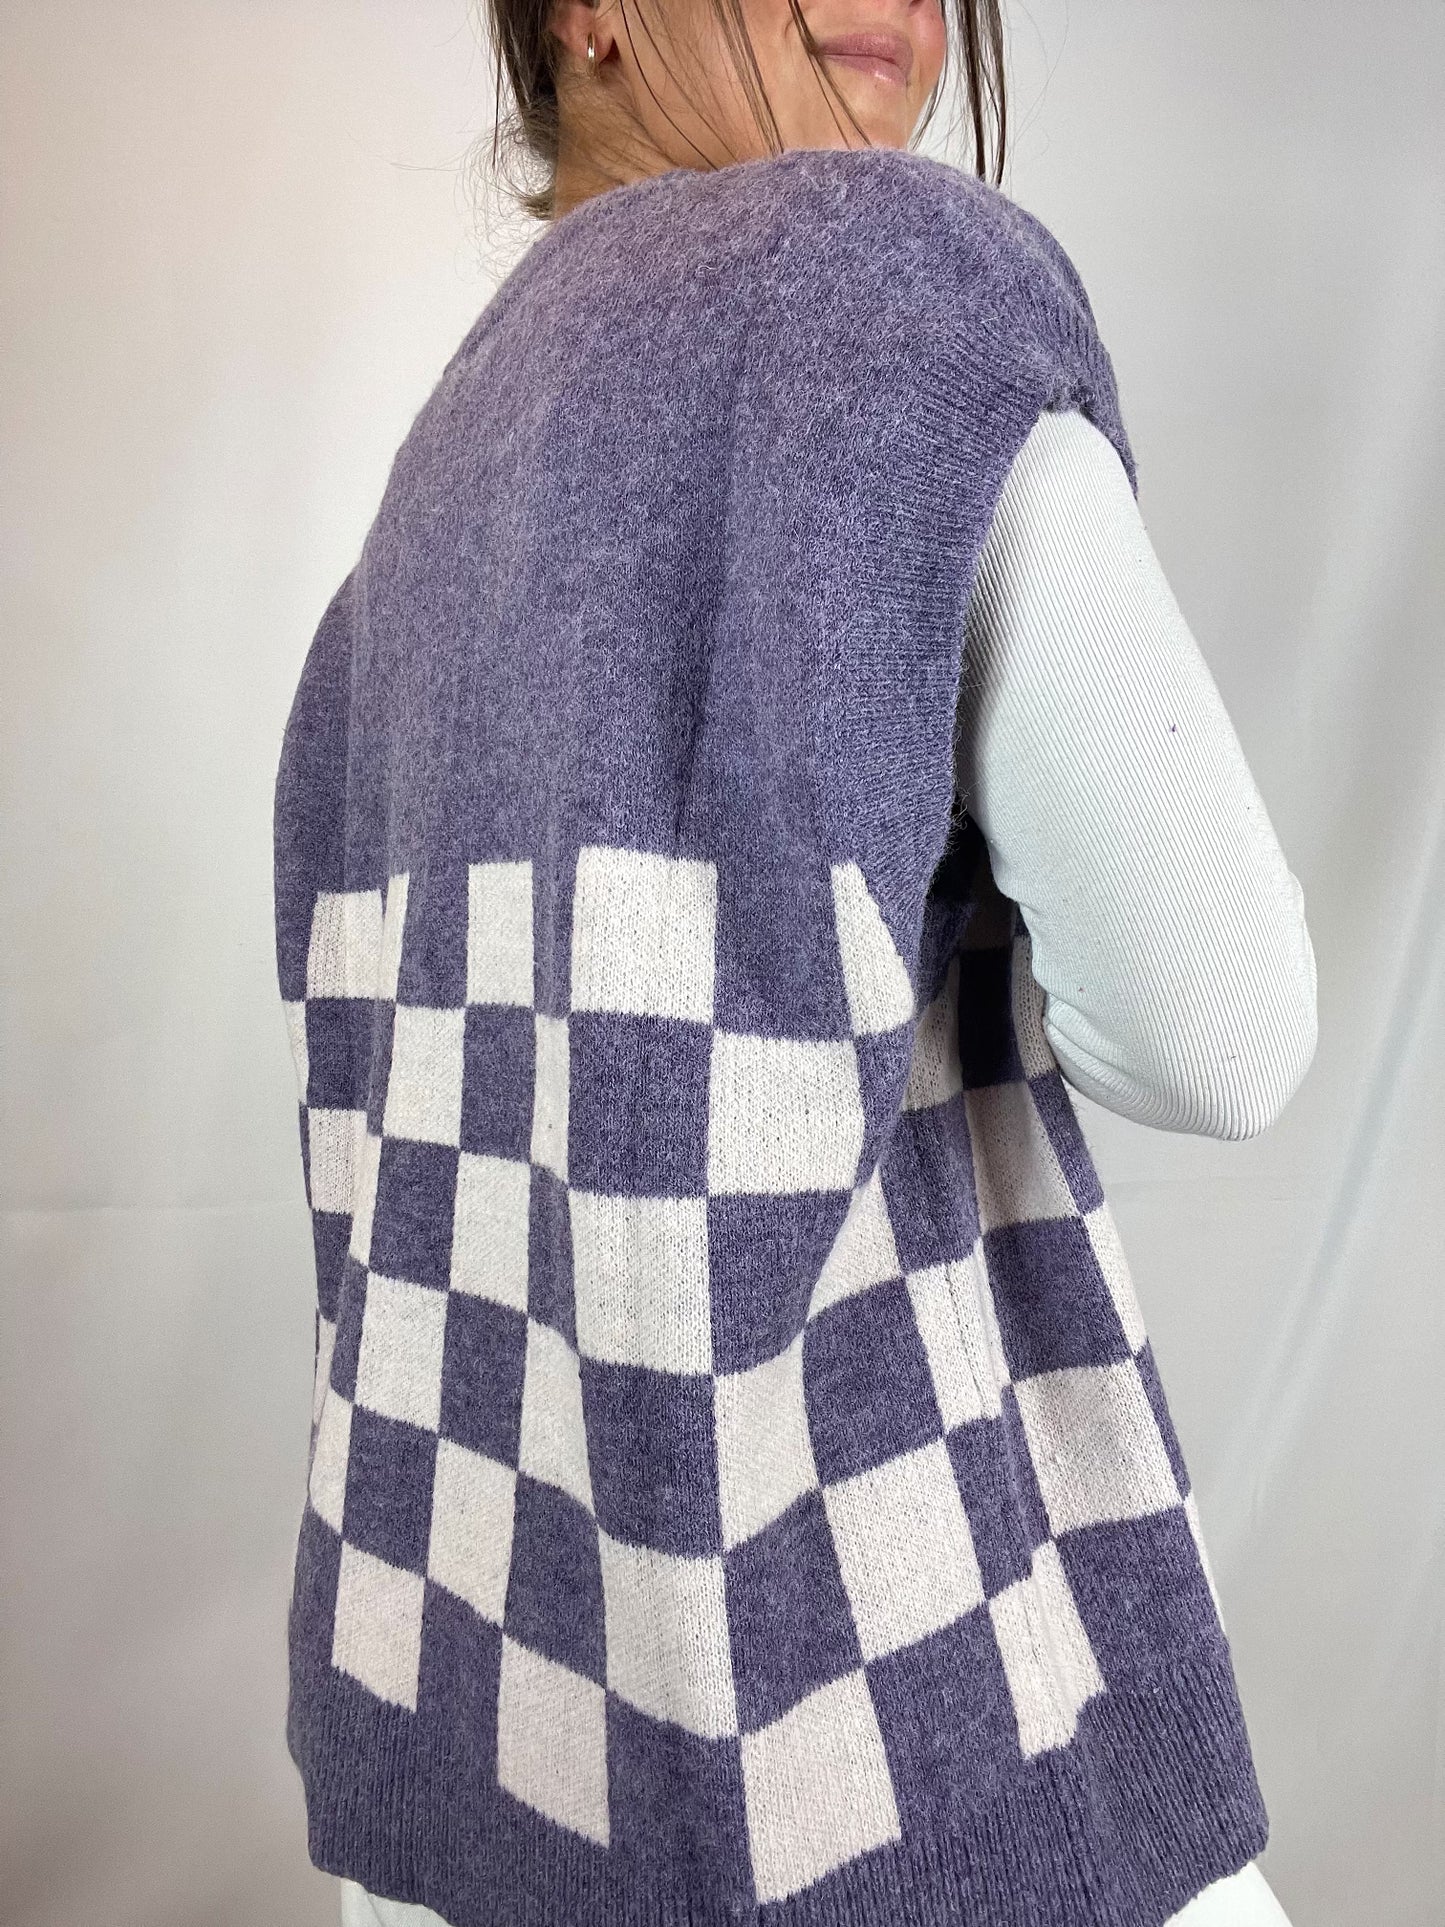 The Violet Checkboard Vest